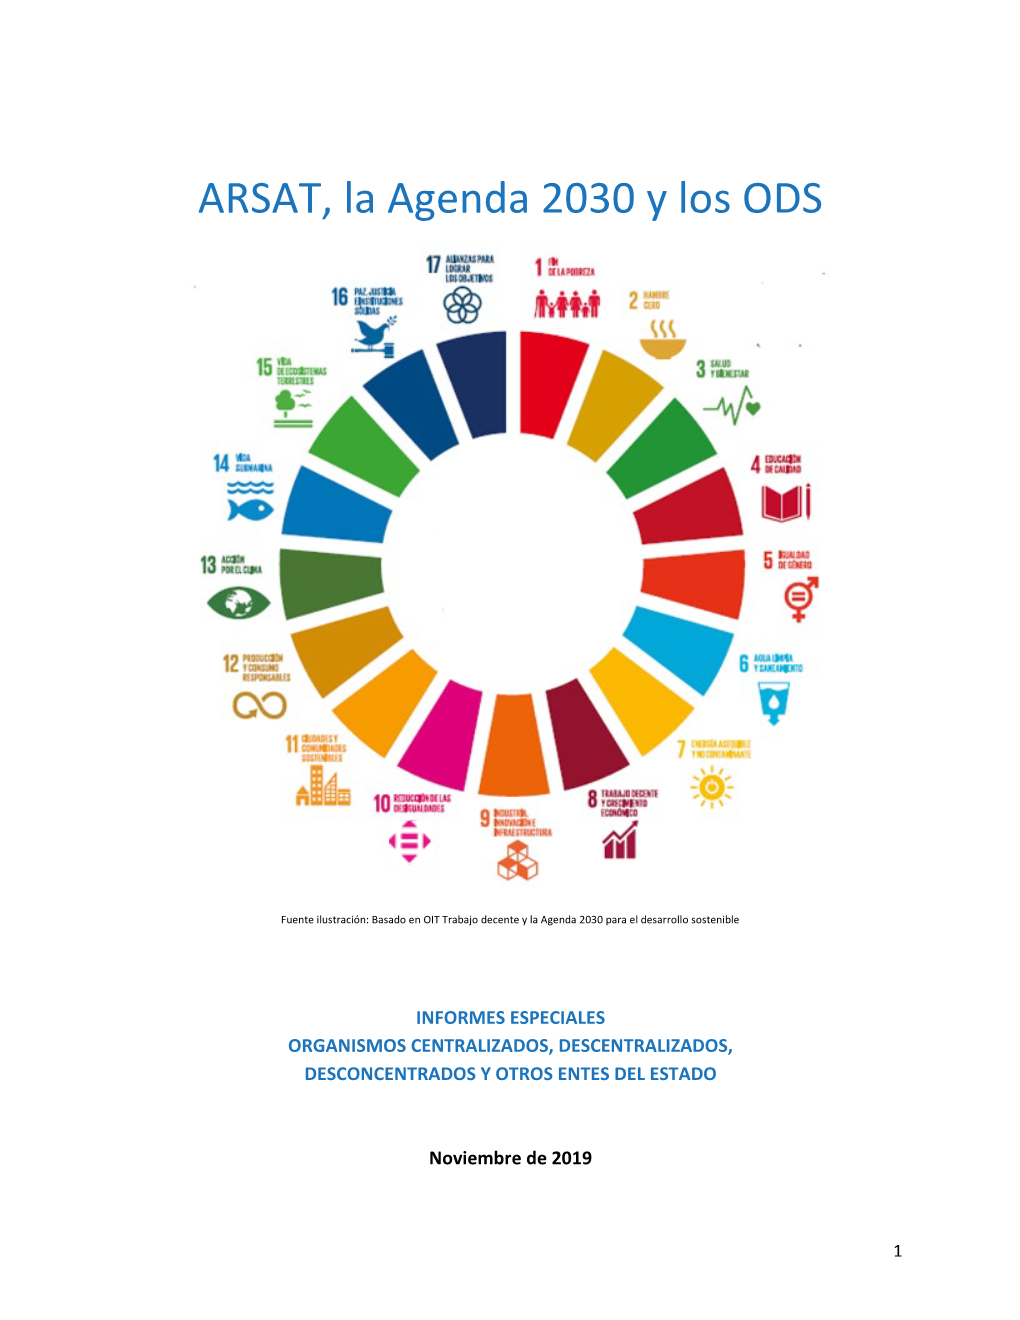 ARSAT, La Agenda 2030 Y Los ODS